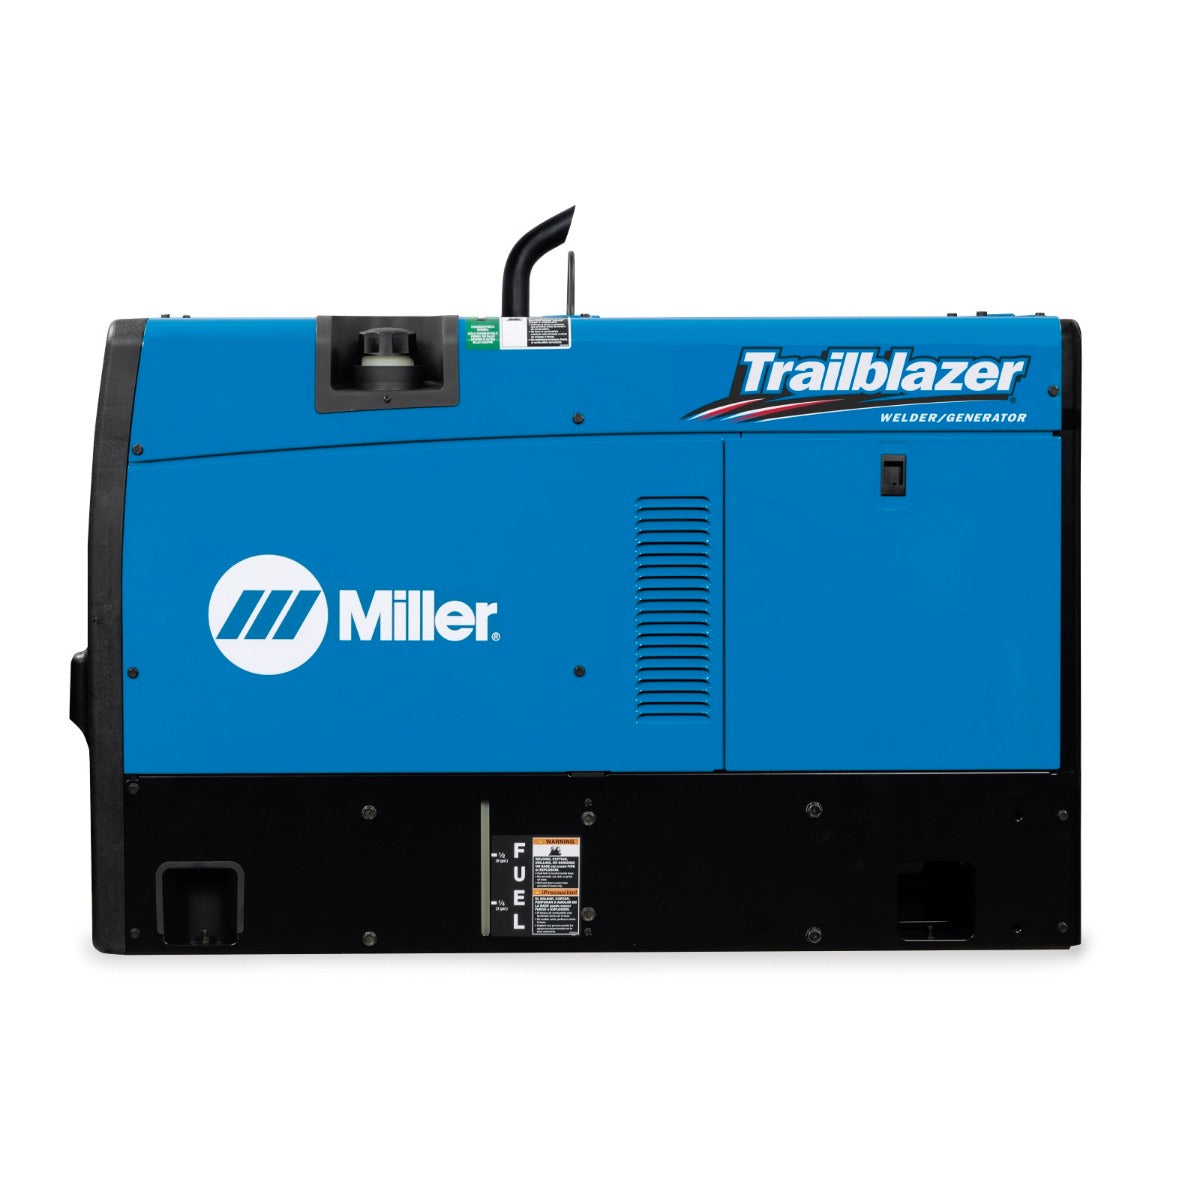 Miller Trailblazer 325 Kubota Diesel w/Excel Power, GFCI, and ArcReach (907799002)